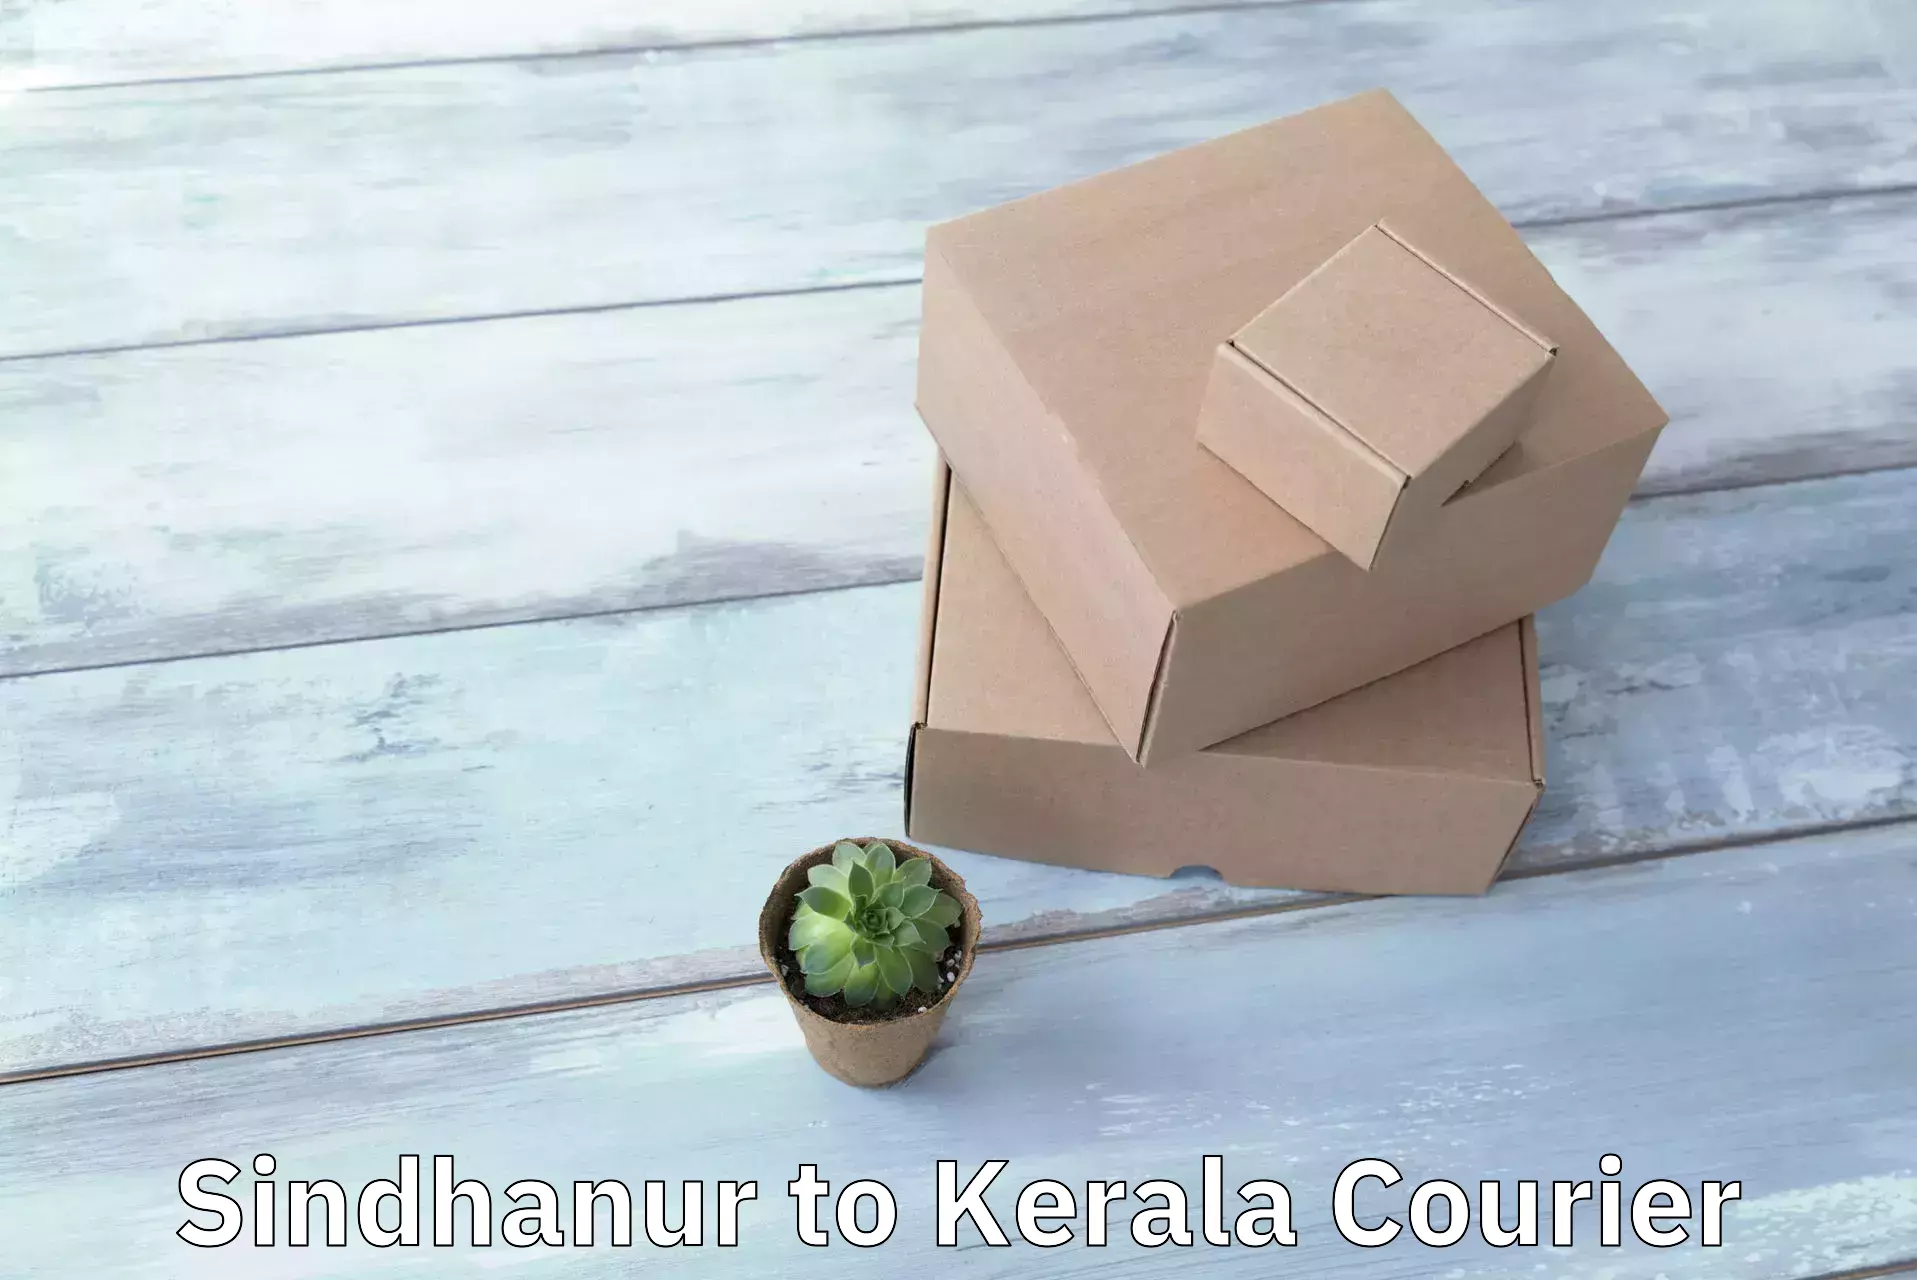 Courier membership Sindhanur to Kerala